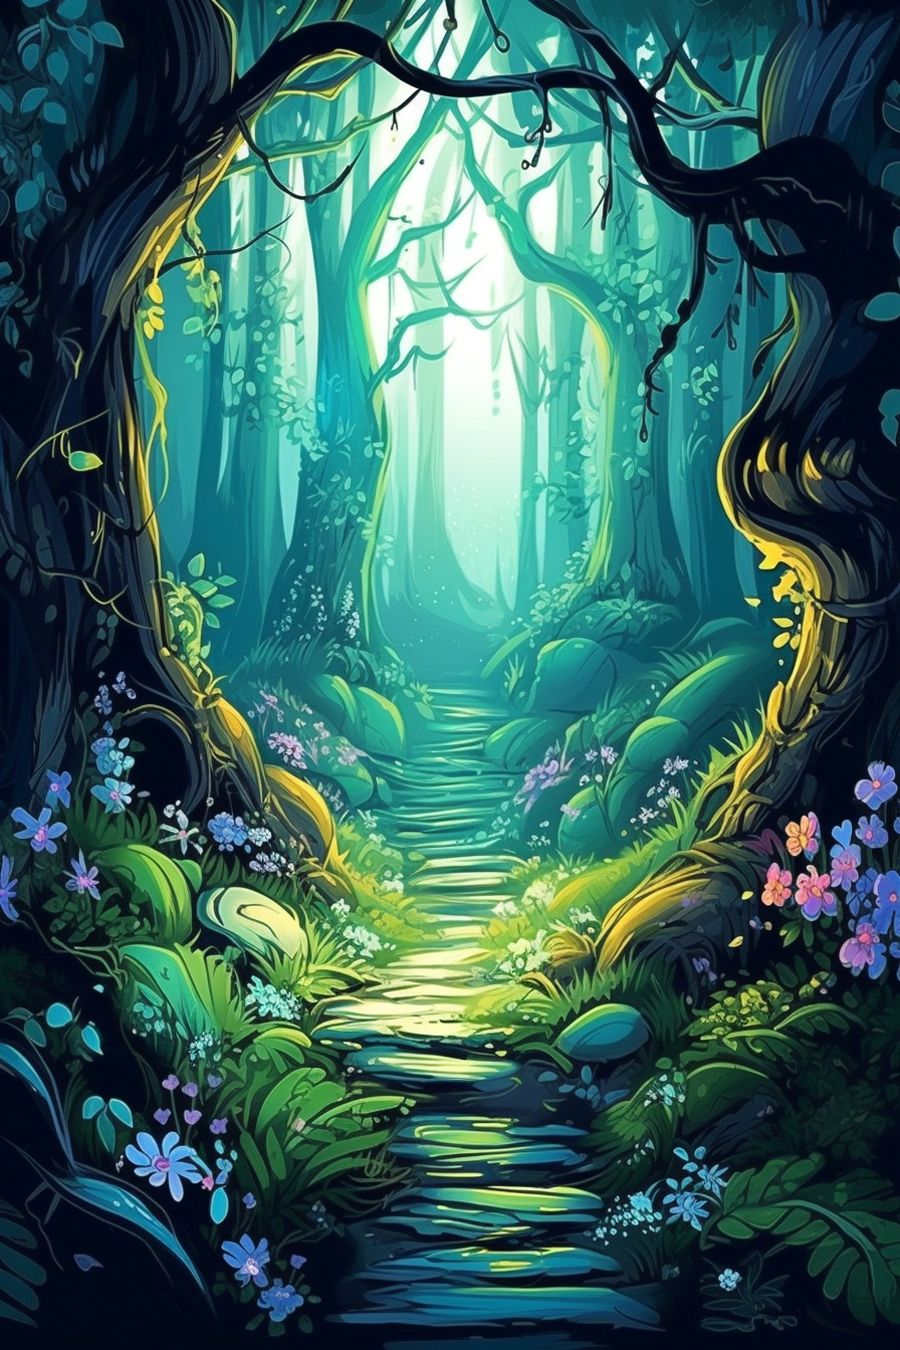 A path through a forest.